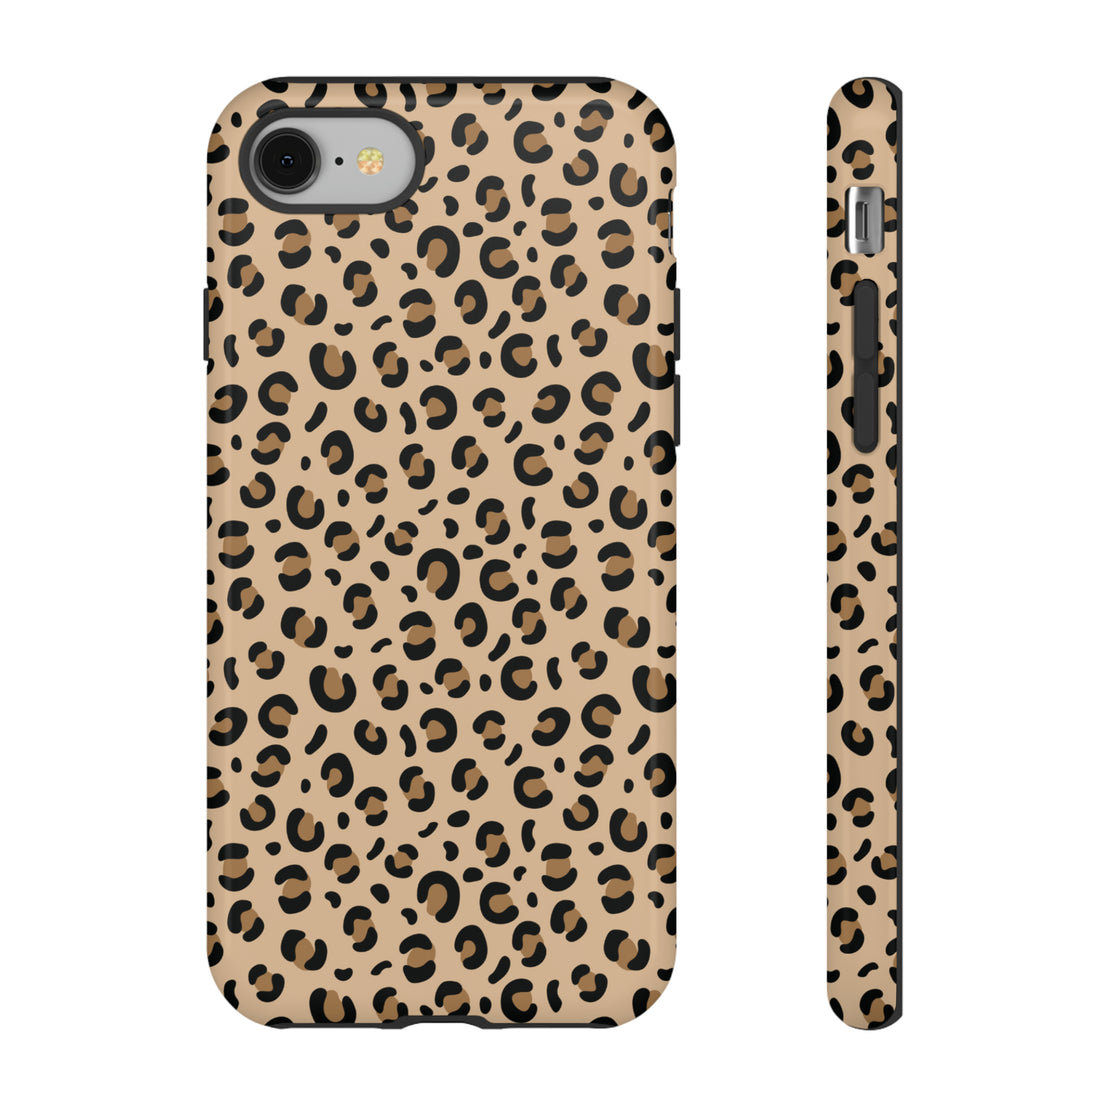 Cheetah Chic | Tough Case